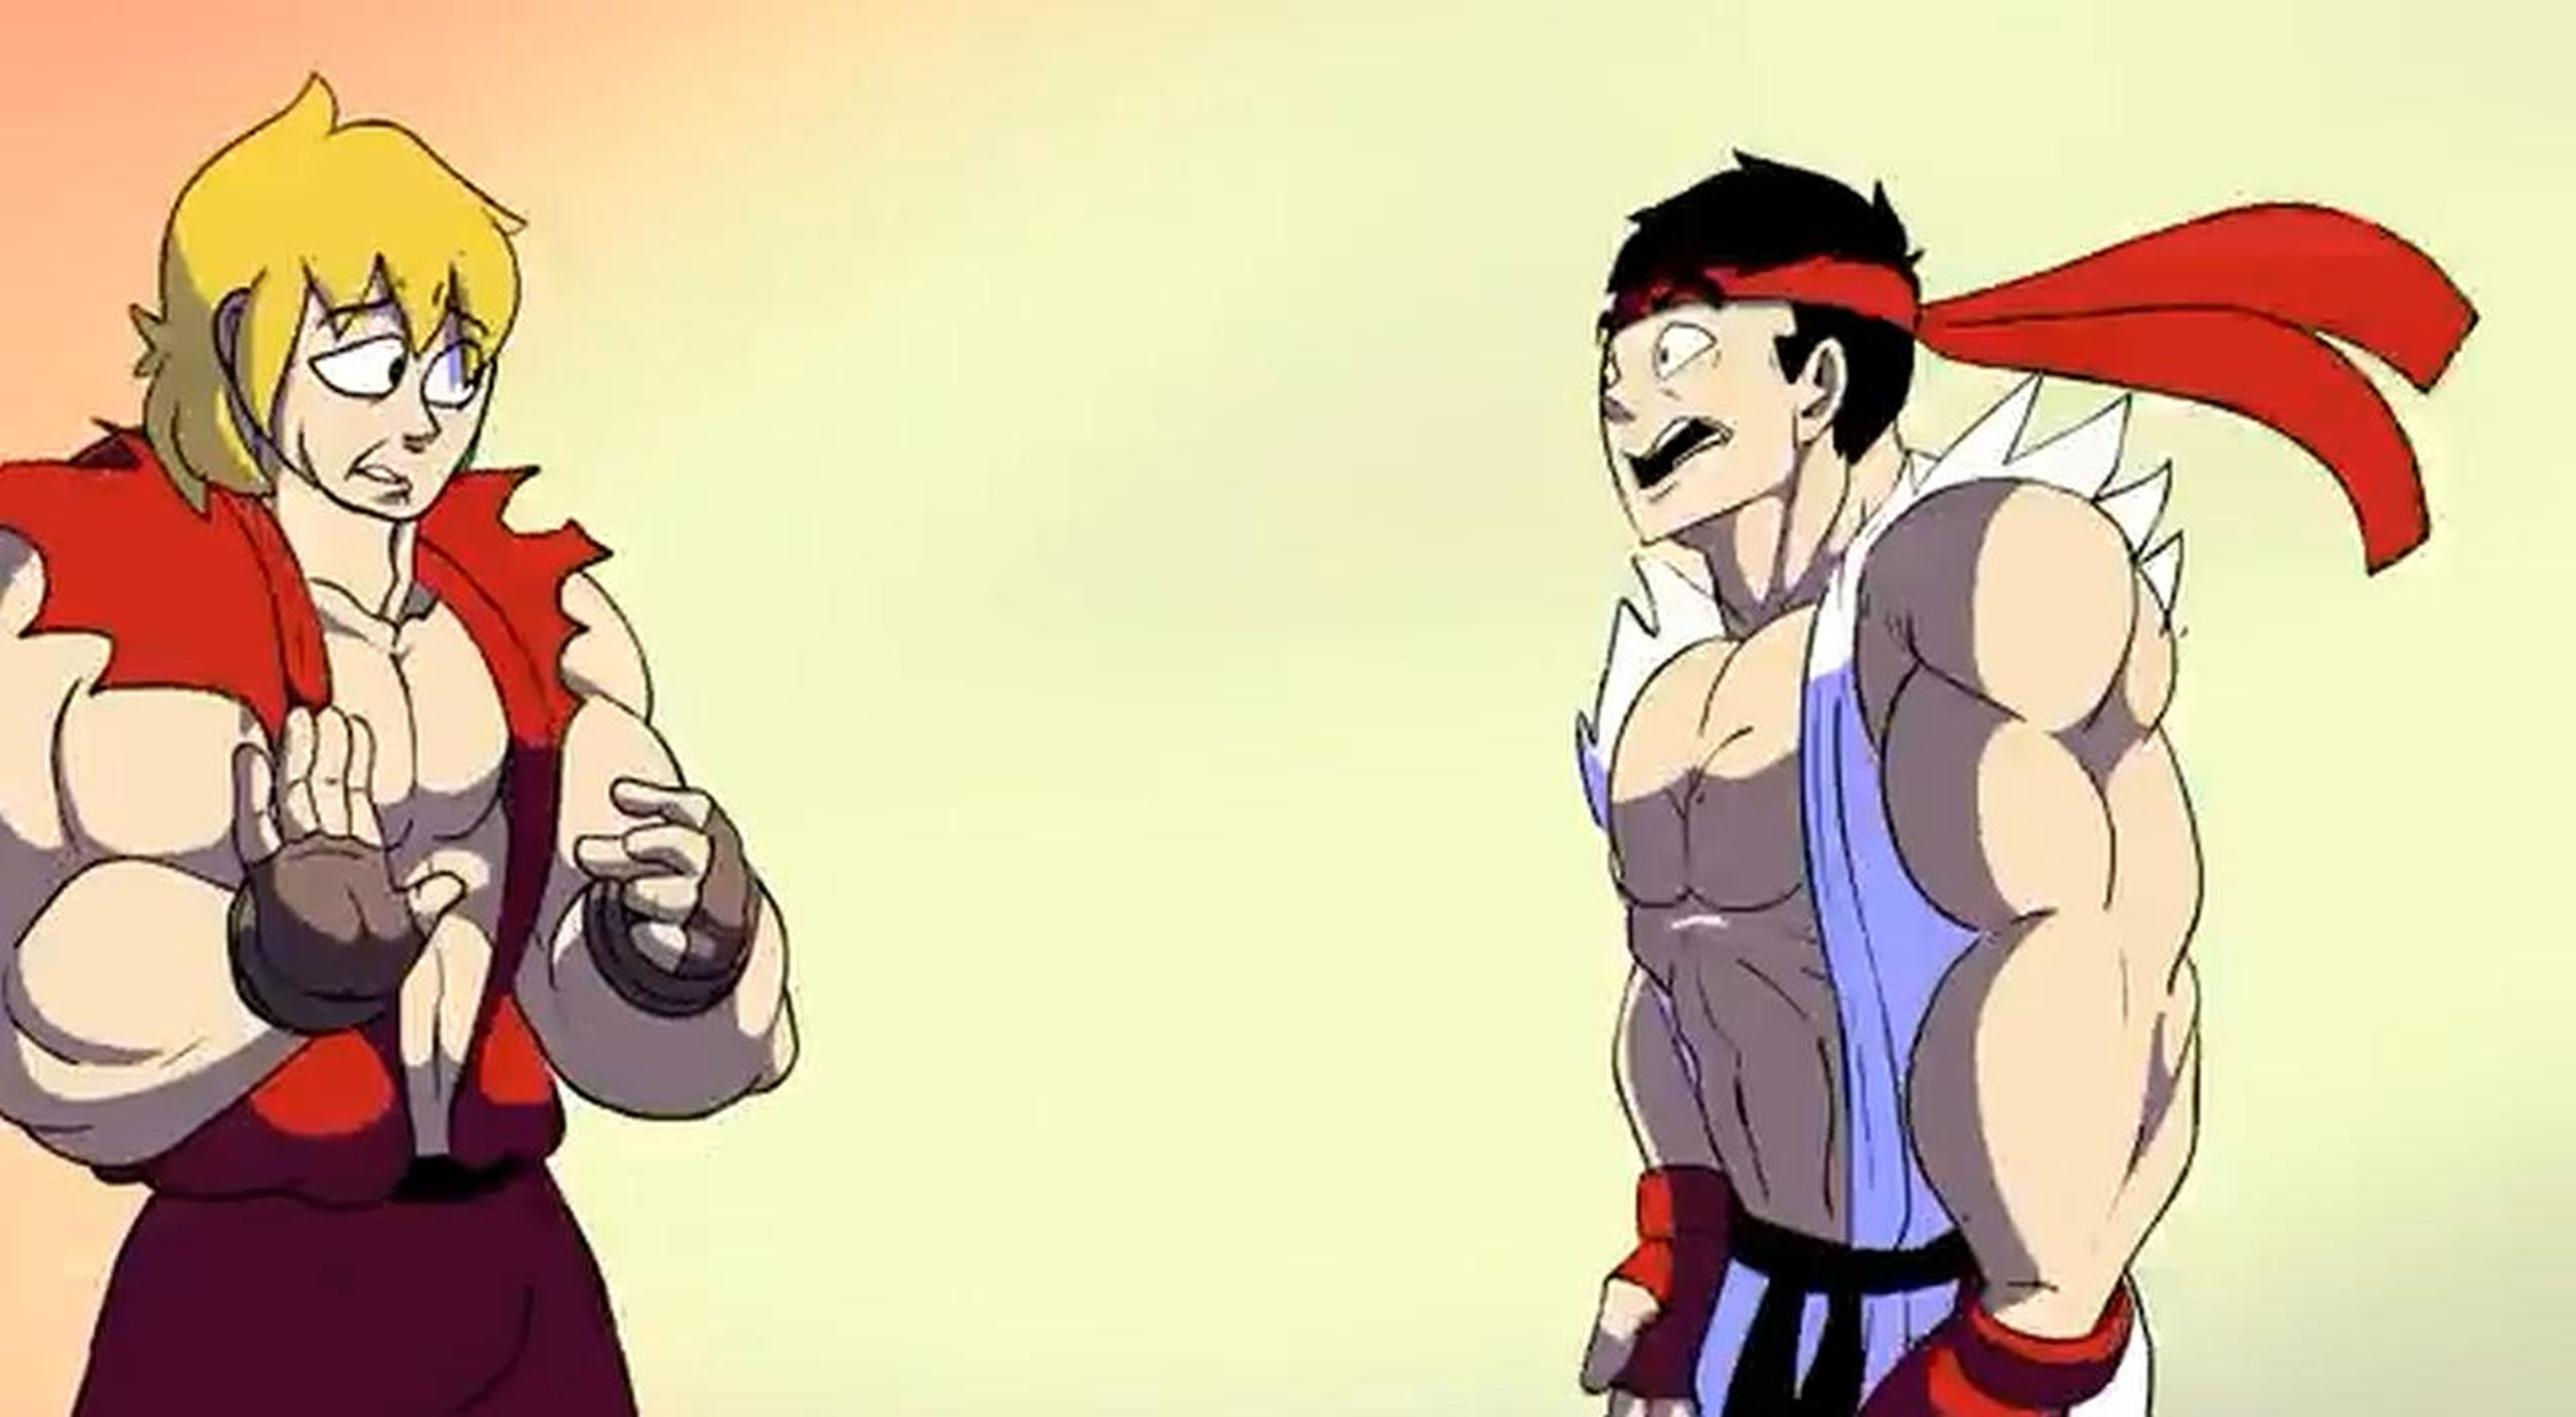 La batalla de rap entre Ryu y Ken